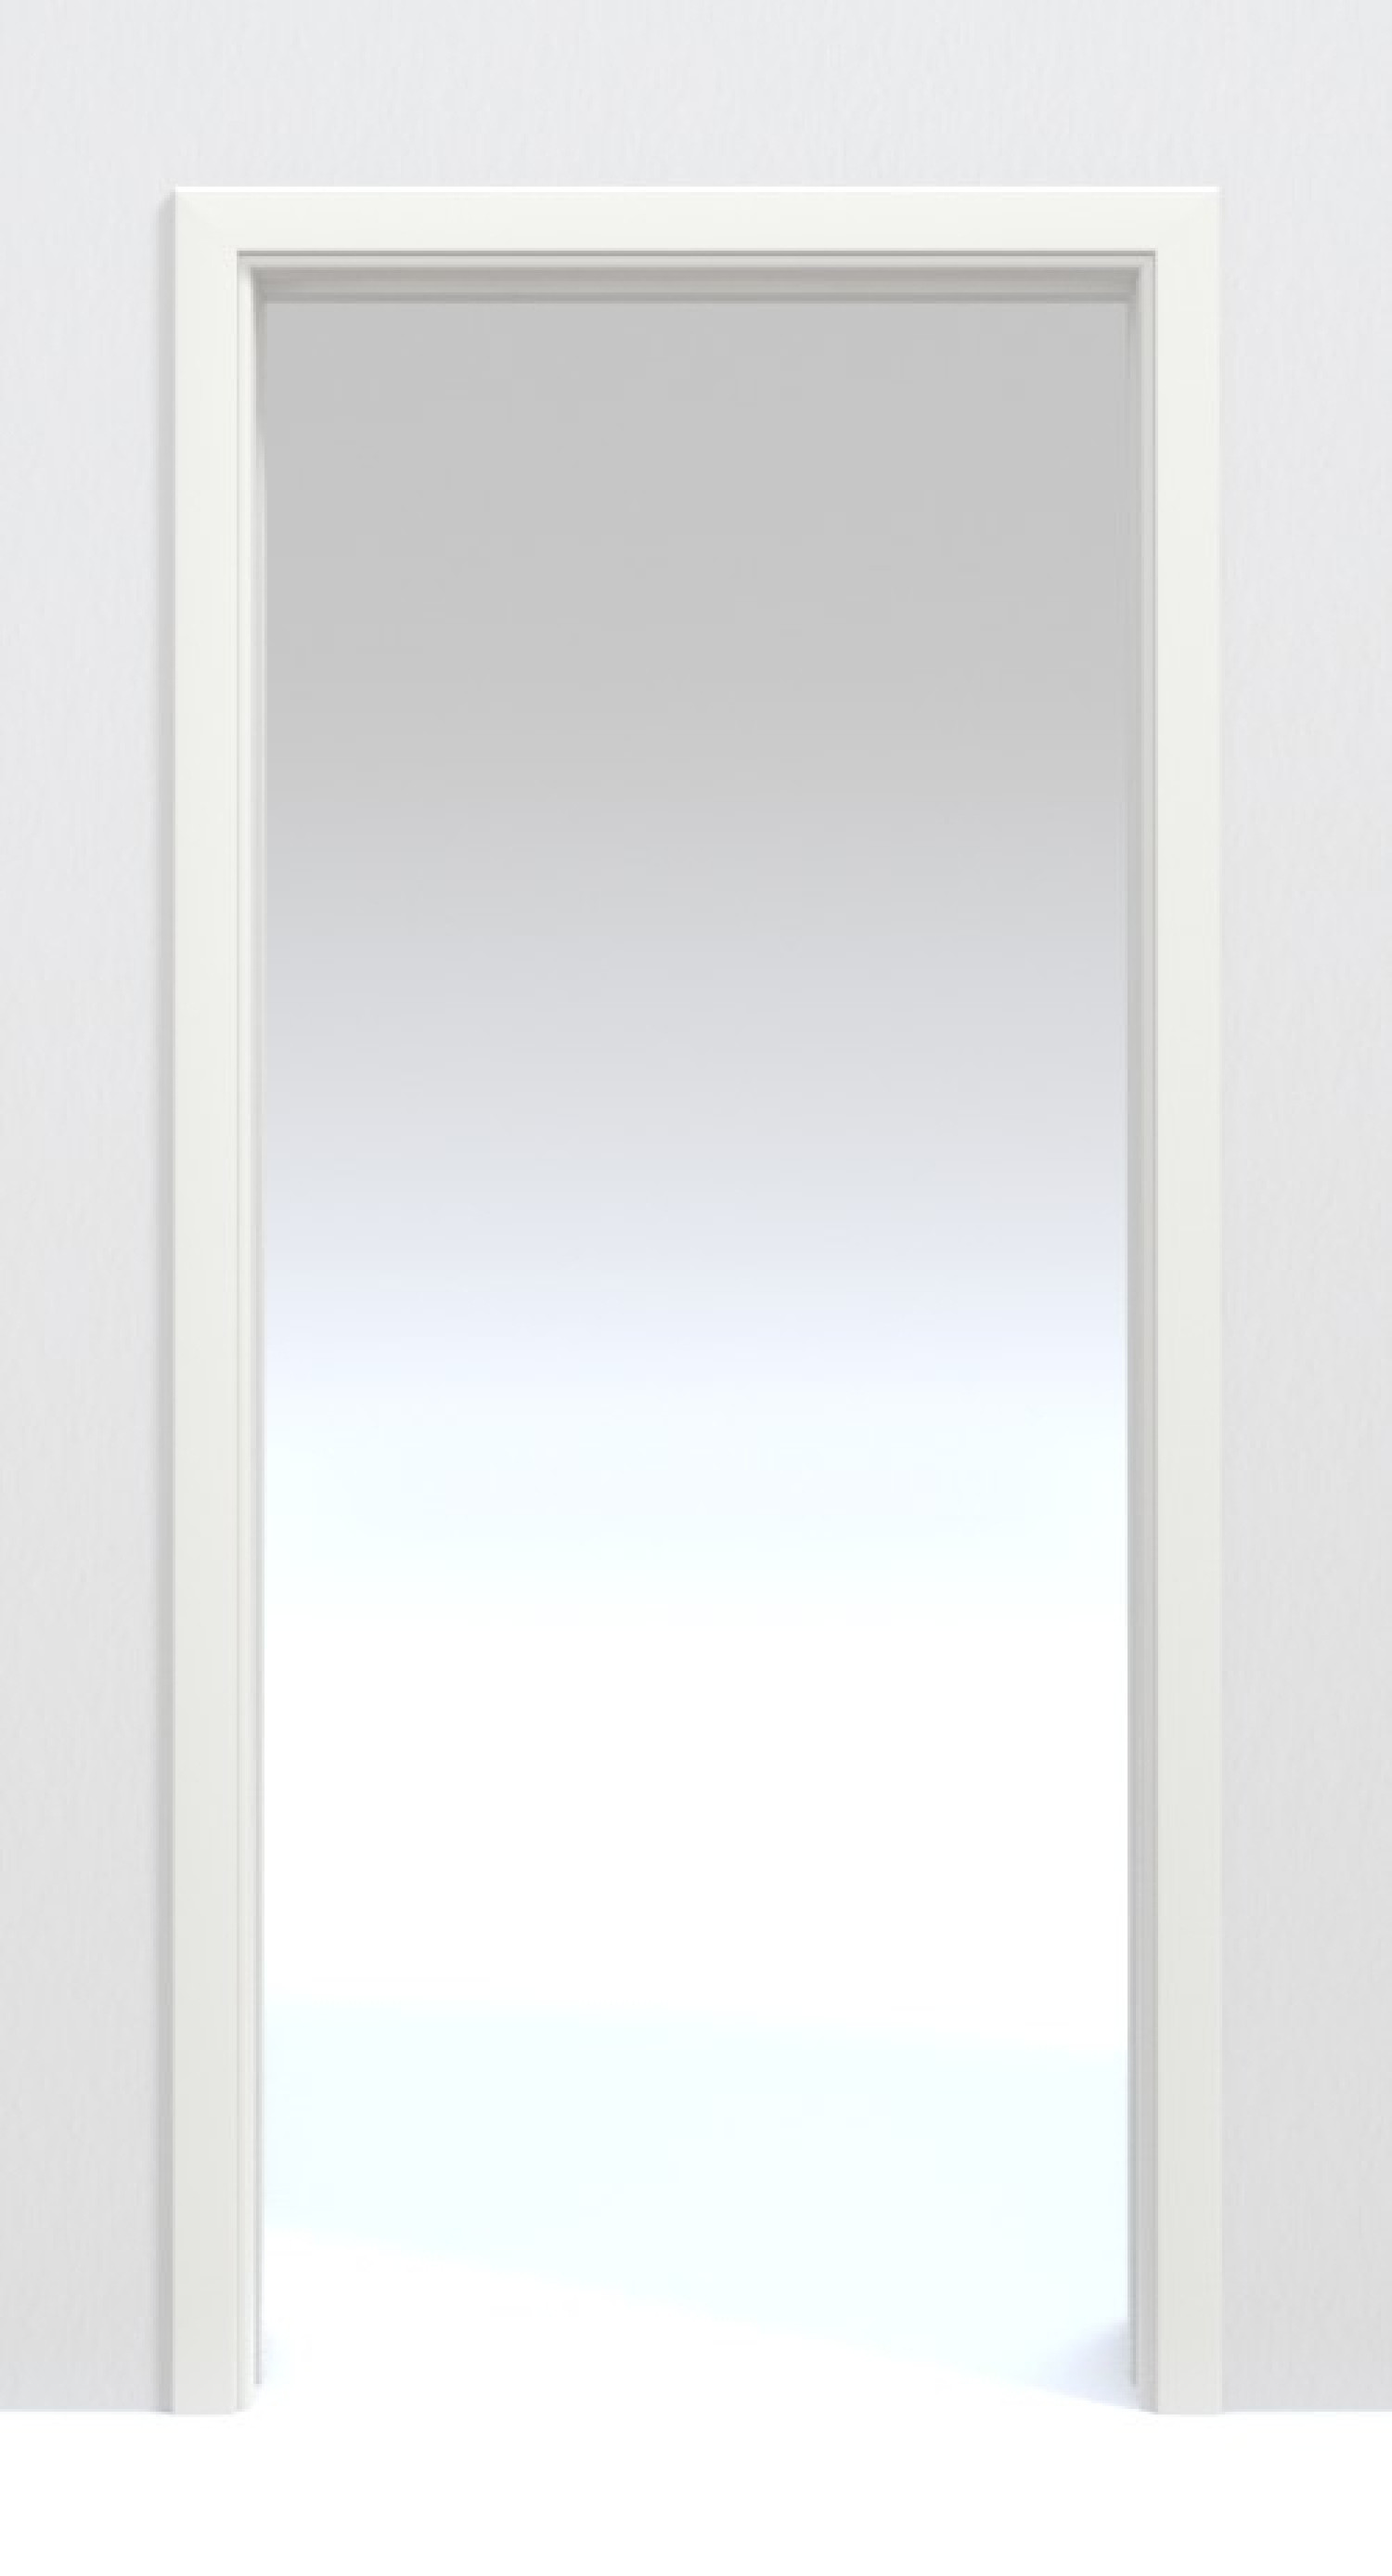 Bild von Schiebetürsystem Weißlack 9010 Premium in der Wand laufend